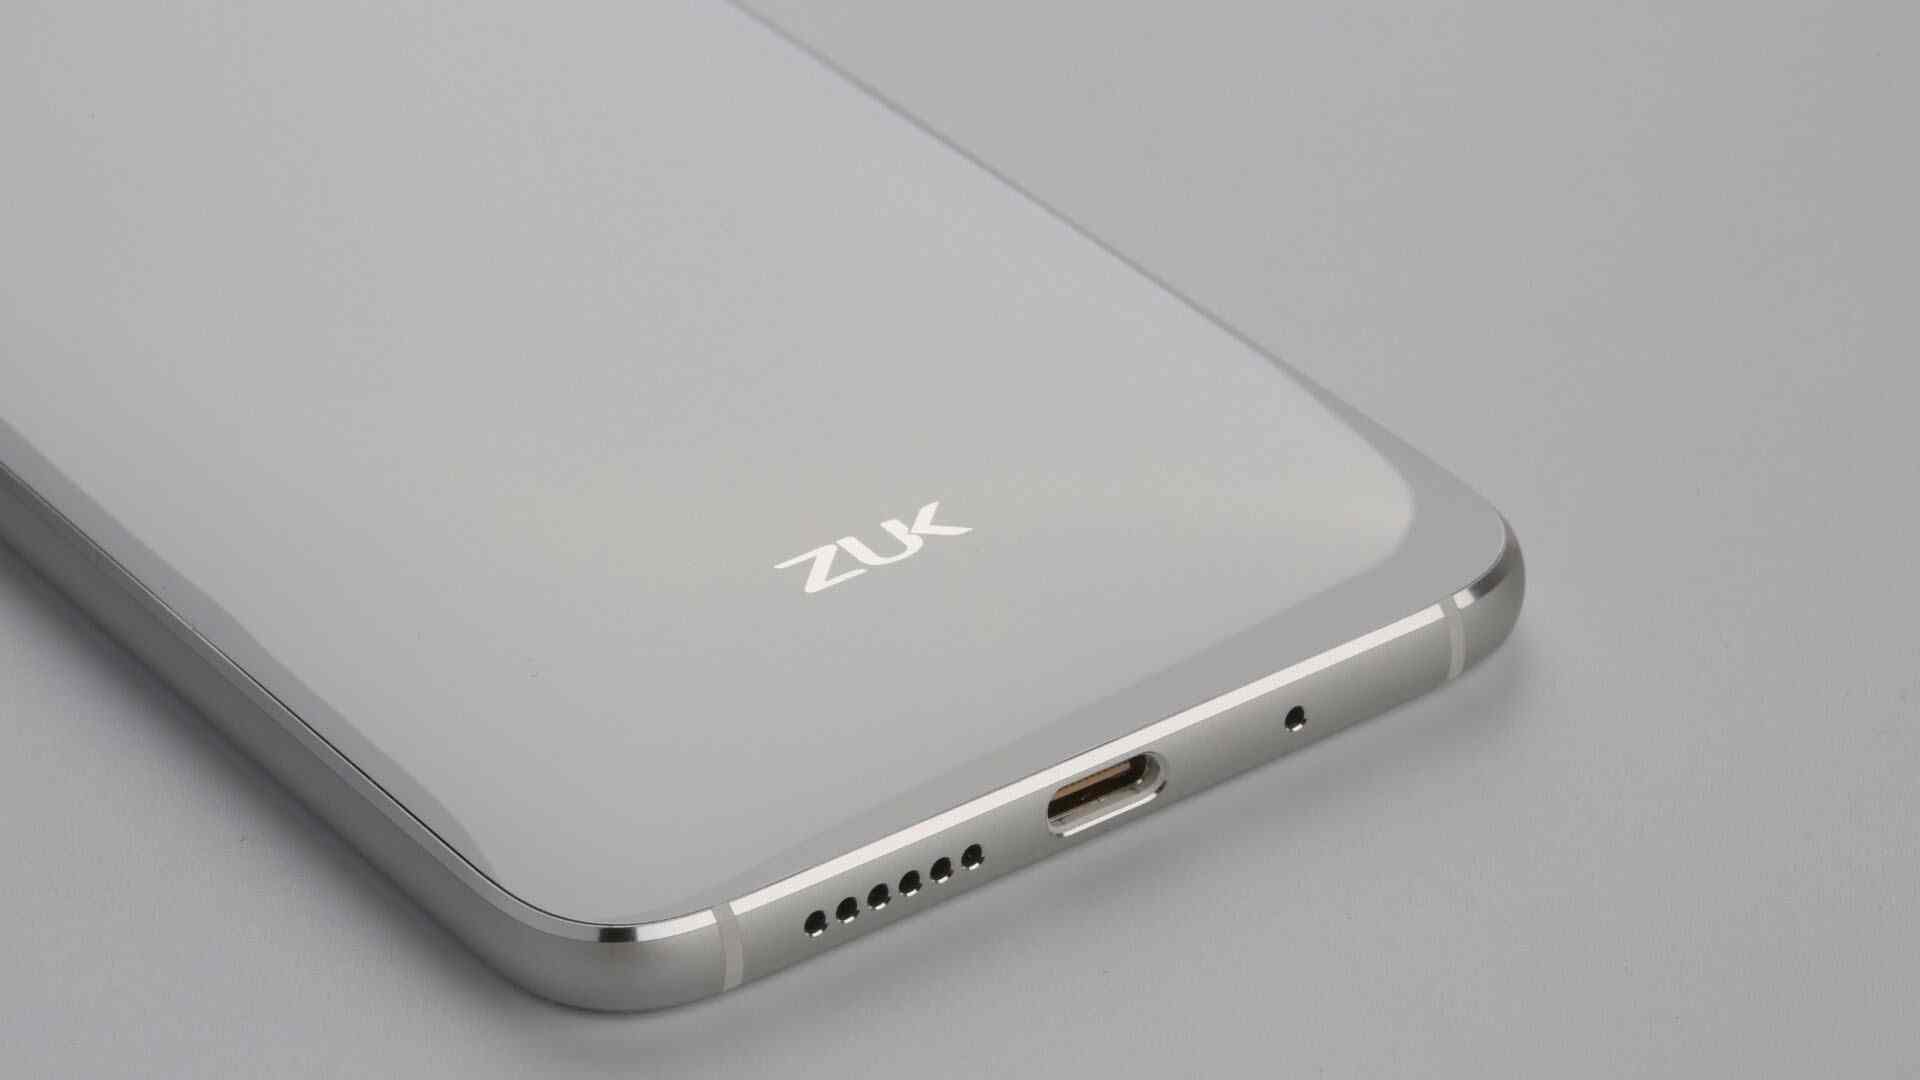 Lenovo desconecta la submarca ZUK, todos los teléfonos futuros llevan la marca Lenovo Moto